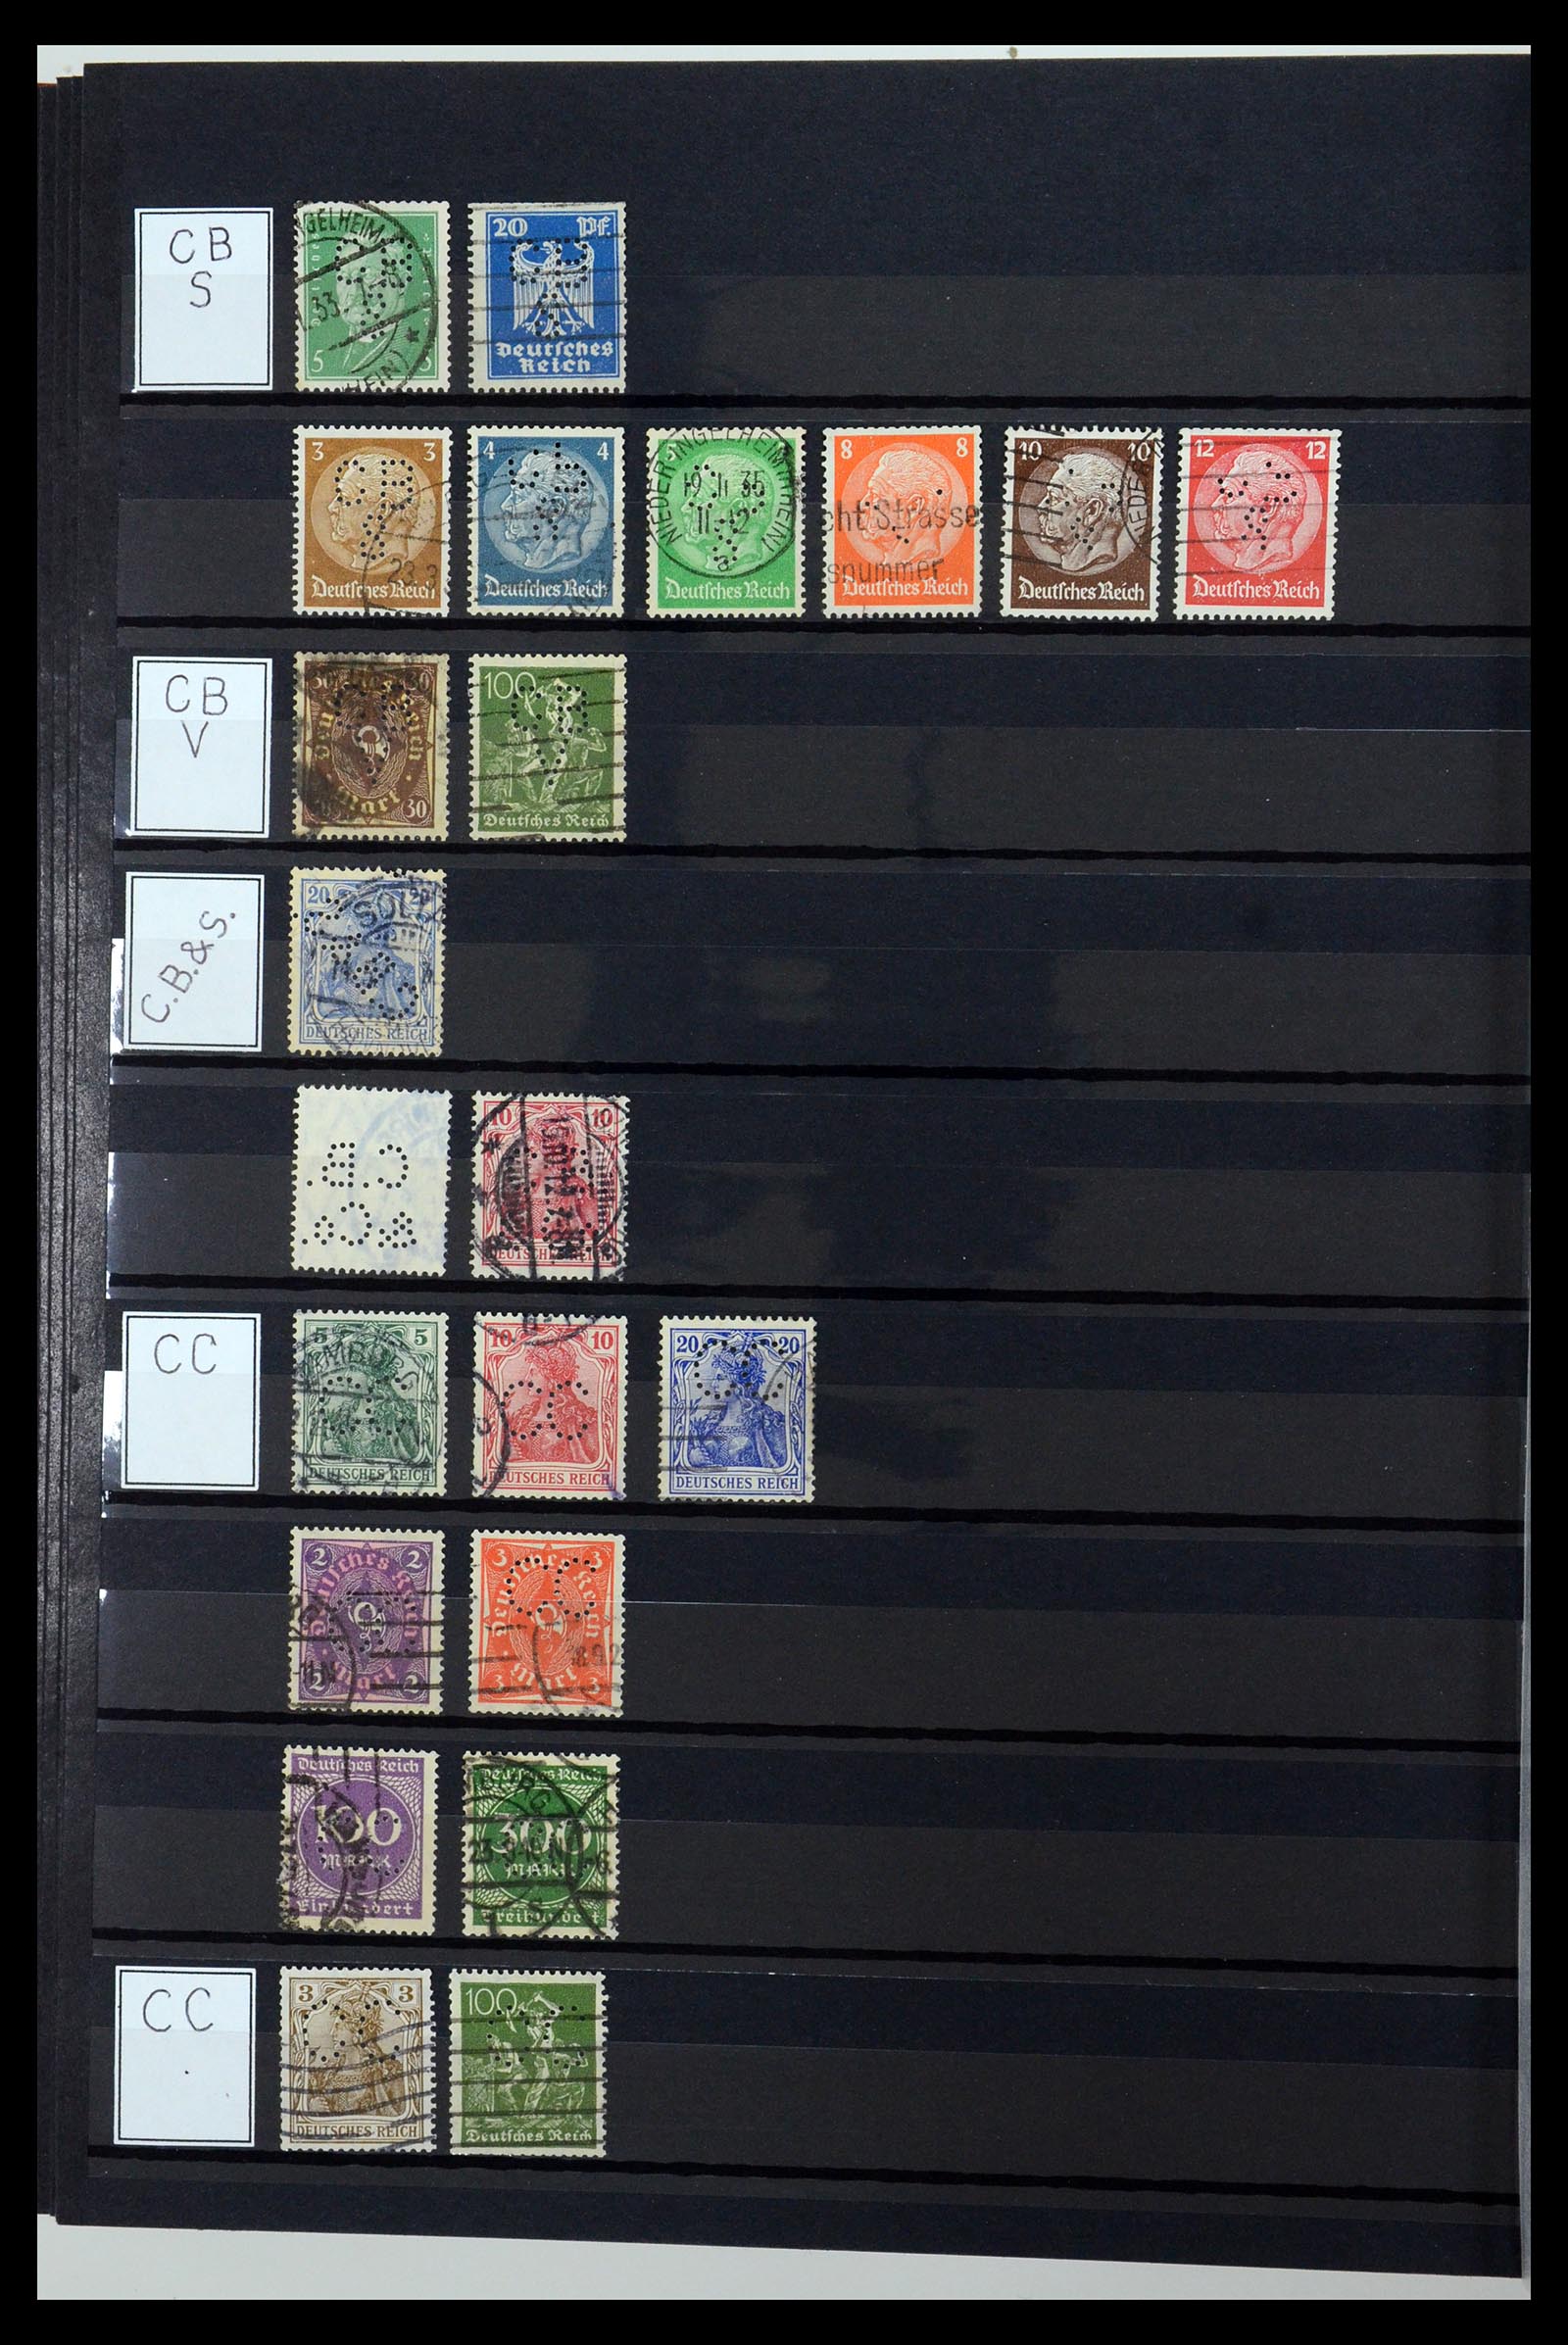 36405 060 - Stamp collection 36405 German Reich perfins 1880-1945.